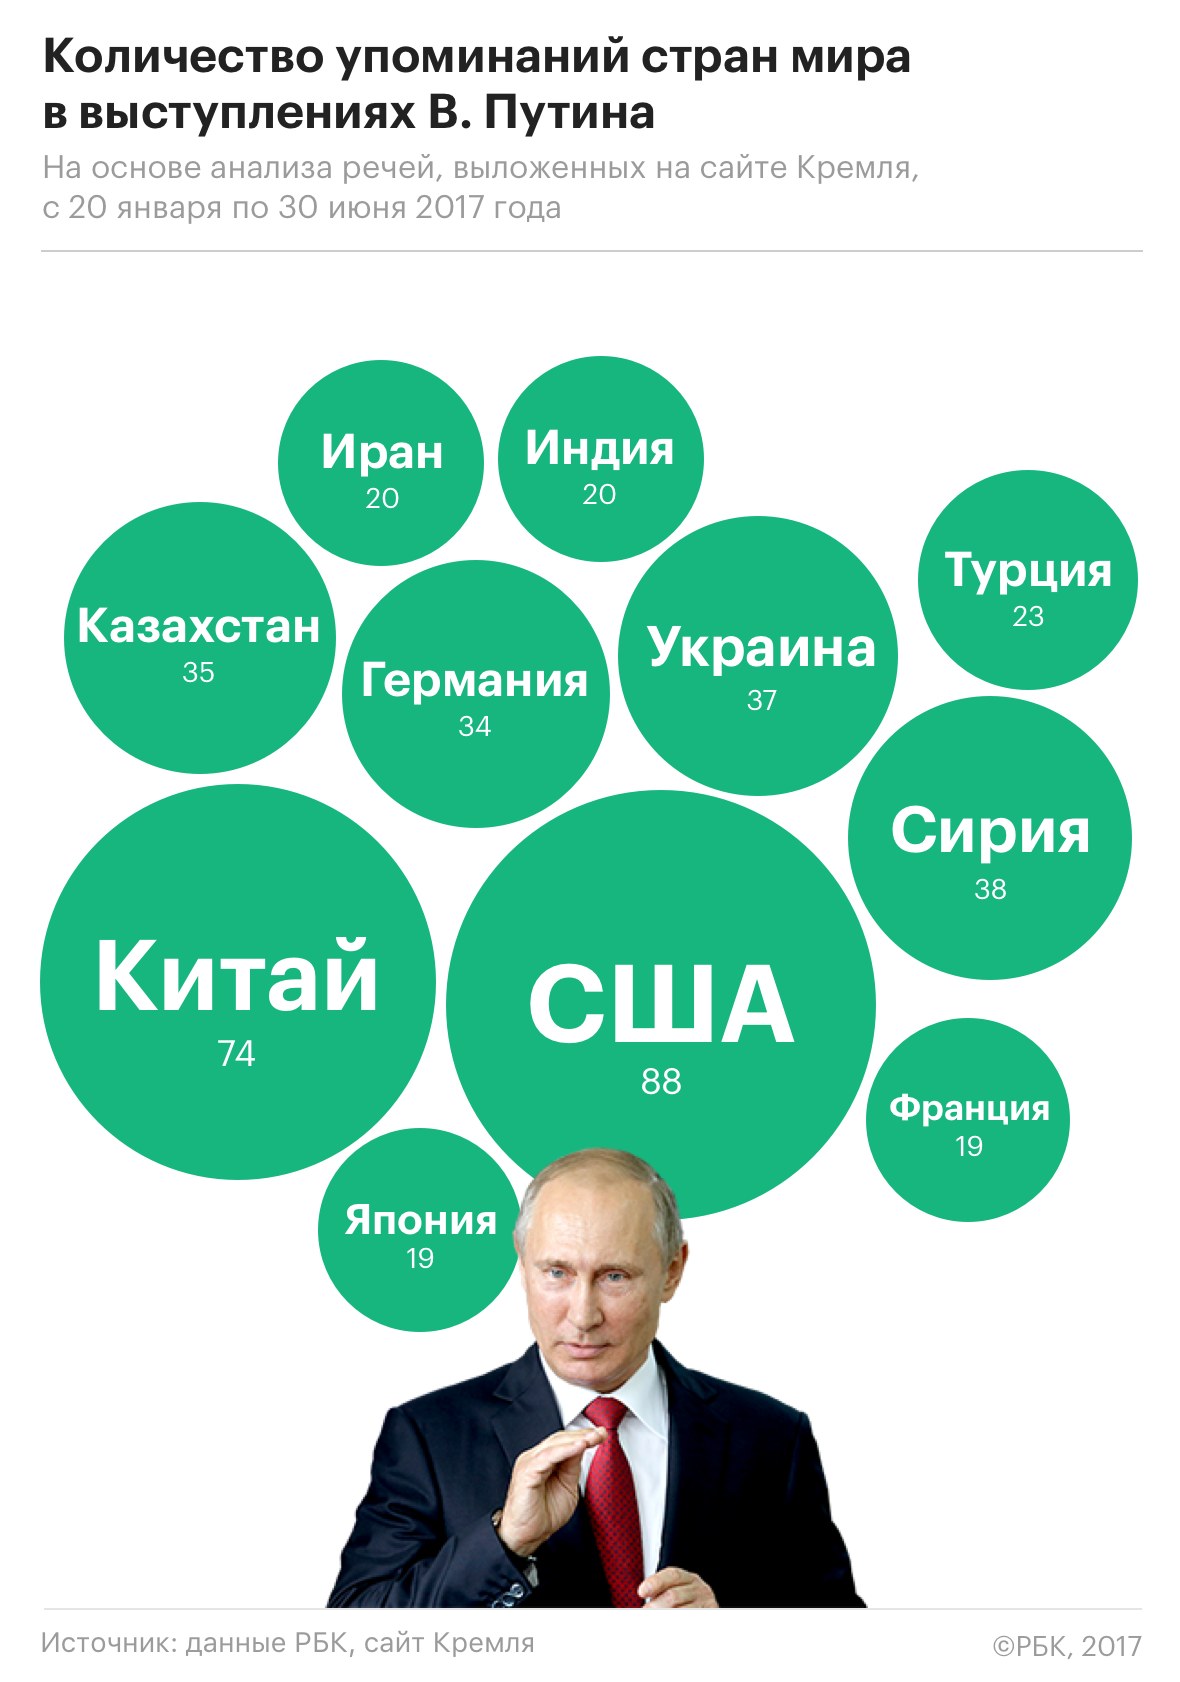 Путин и Трамп чаще всего говорили о США и России